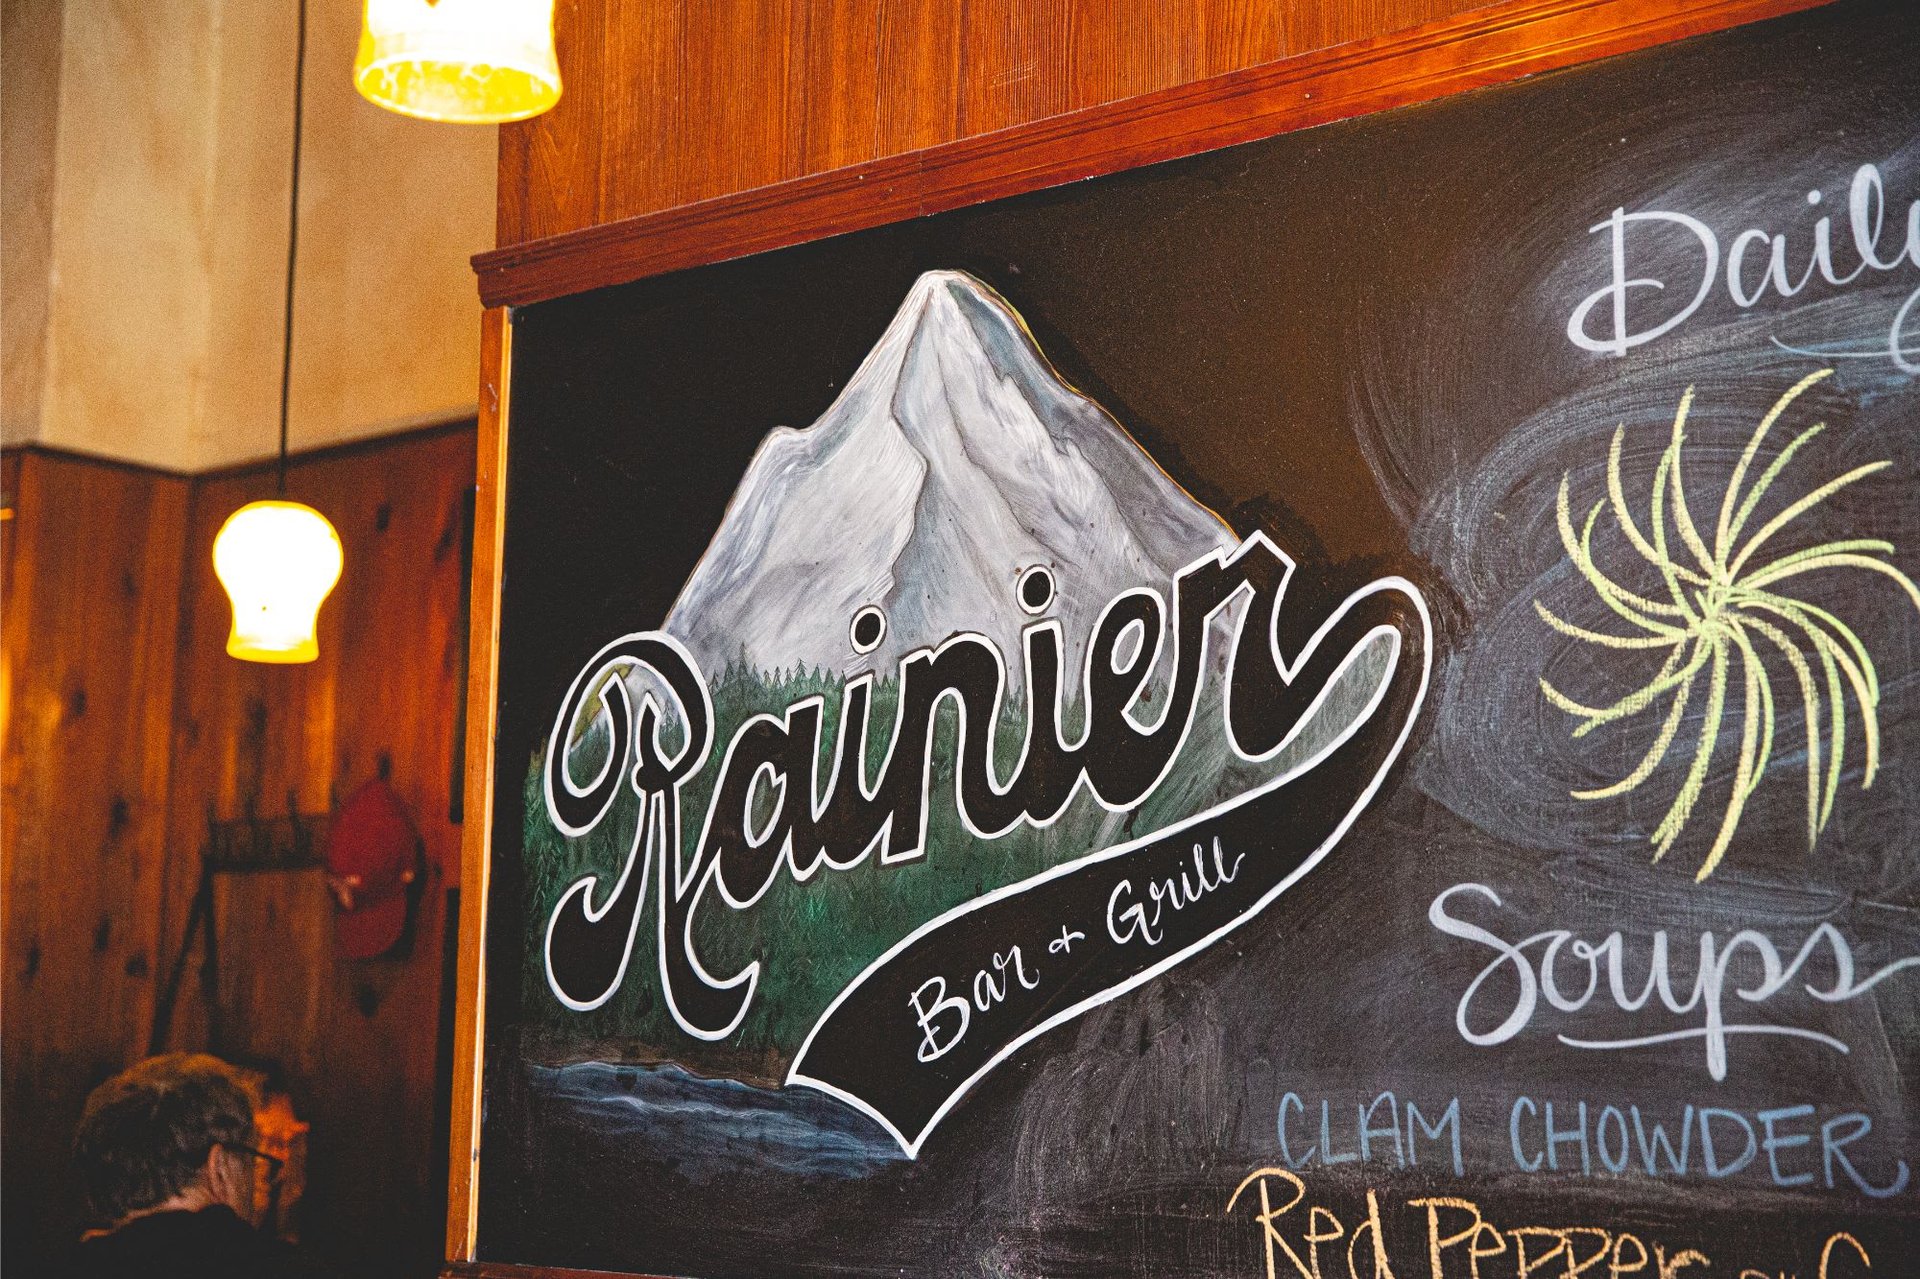 Gallery - The Rainier Bar & Grill - Bar & Grill in Enumclaw, WA